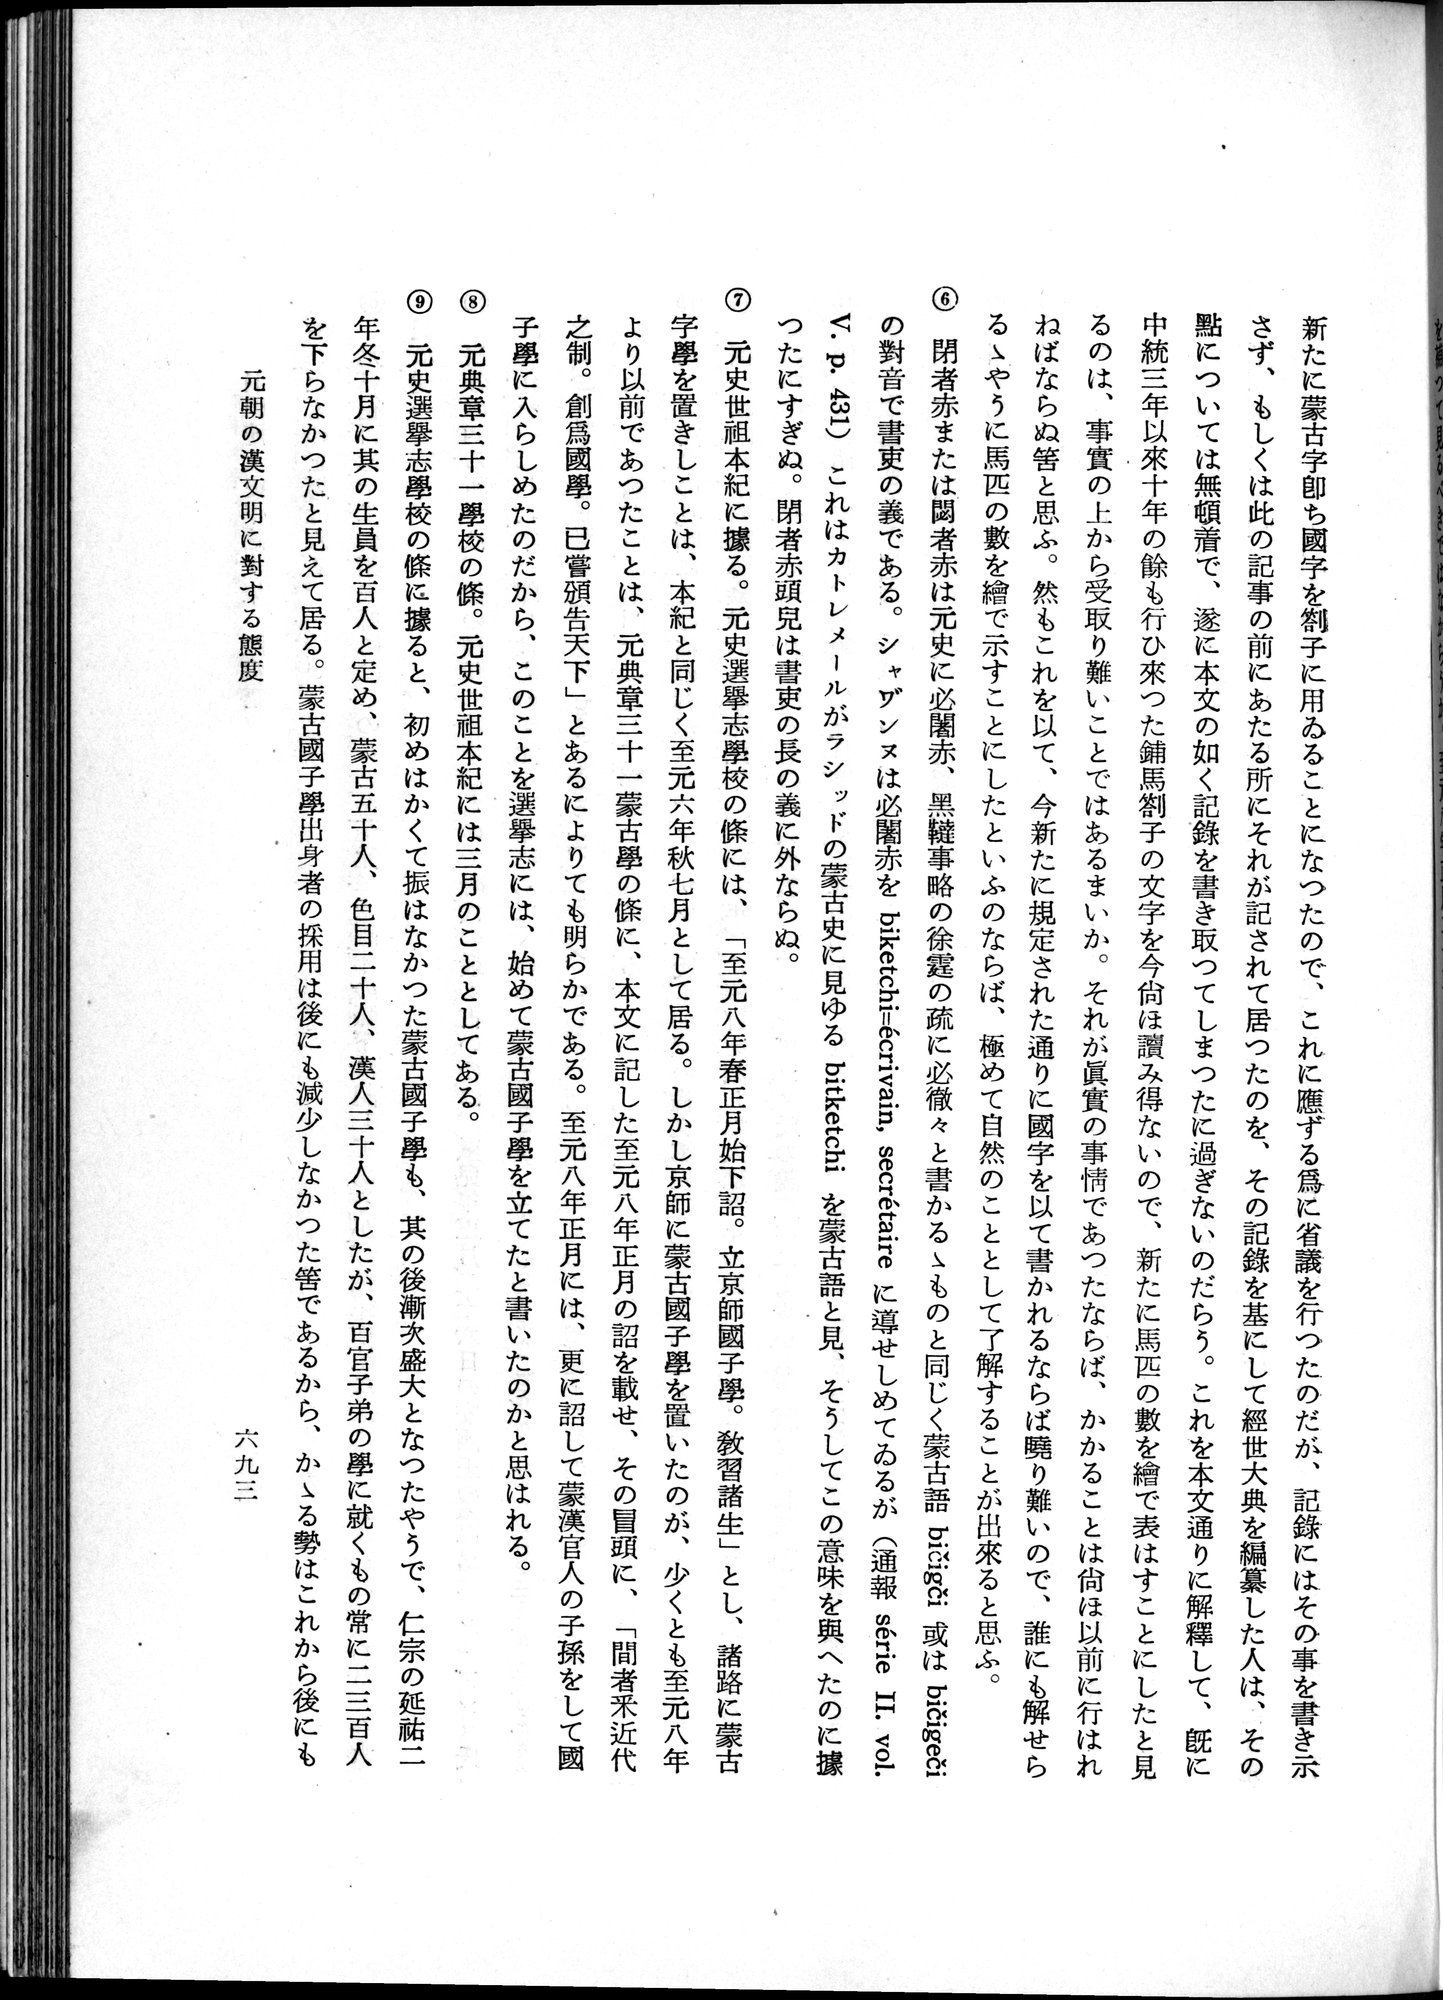 羽田博士史学論文集 : vol.1 / Page 731 (Grayscale High Resolution Image)